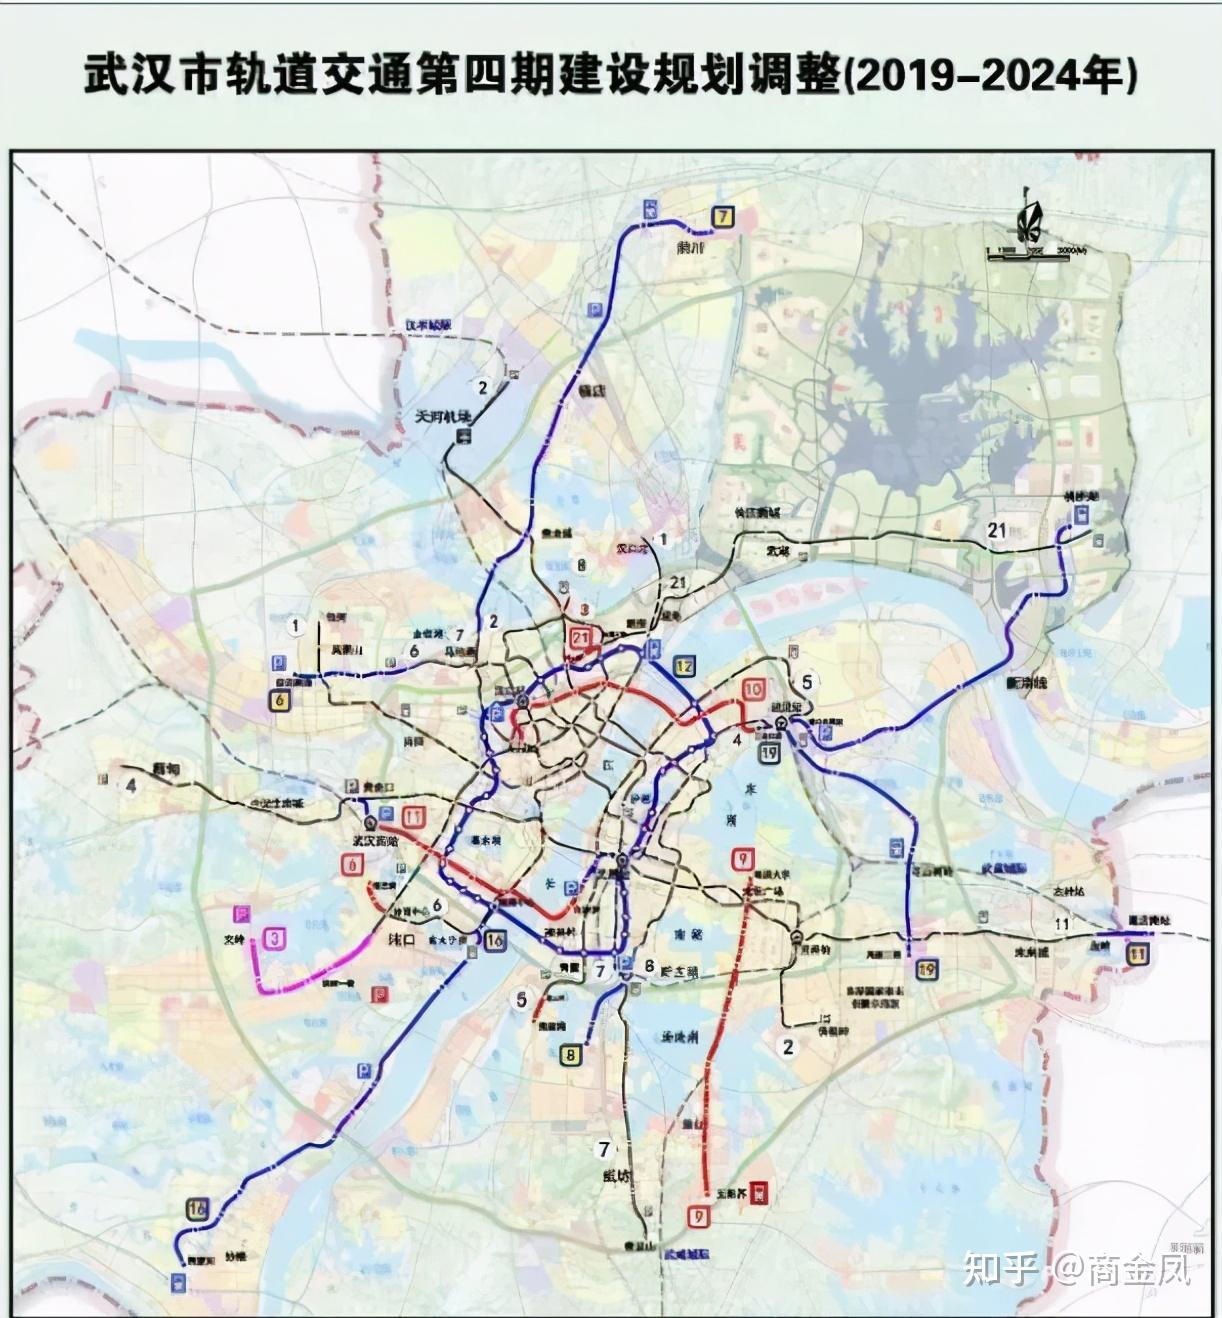 预测:2021年武汉第四期轨道交通建设规划调整有望批复